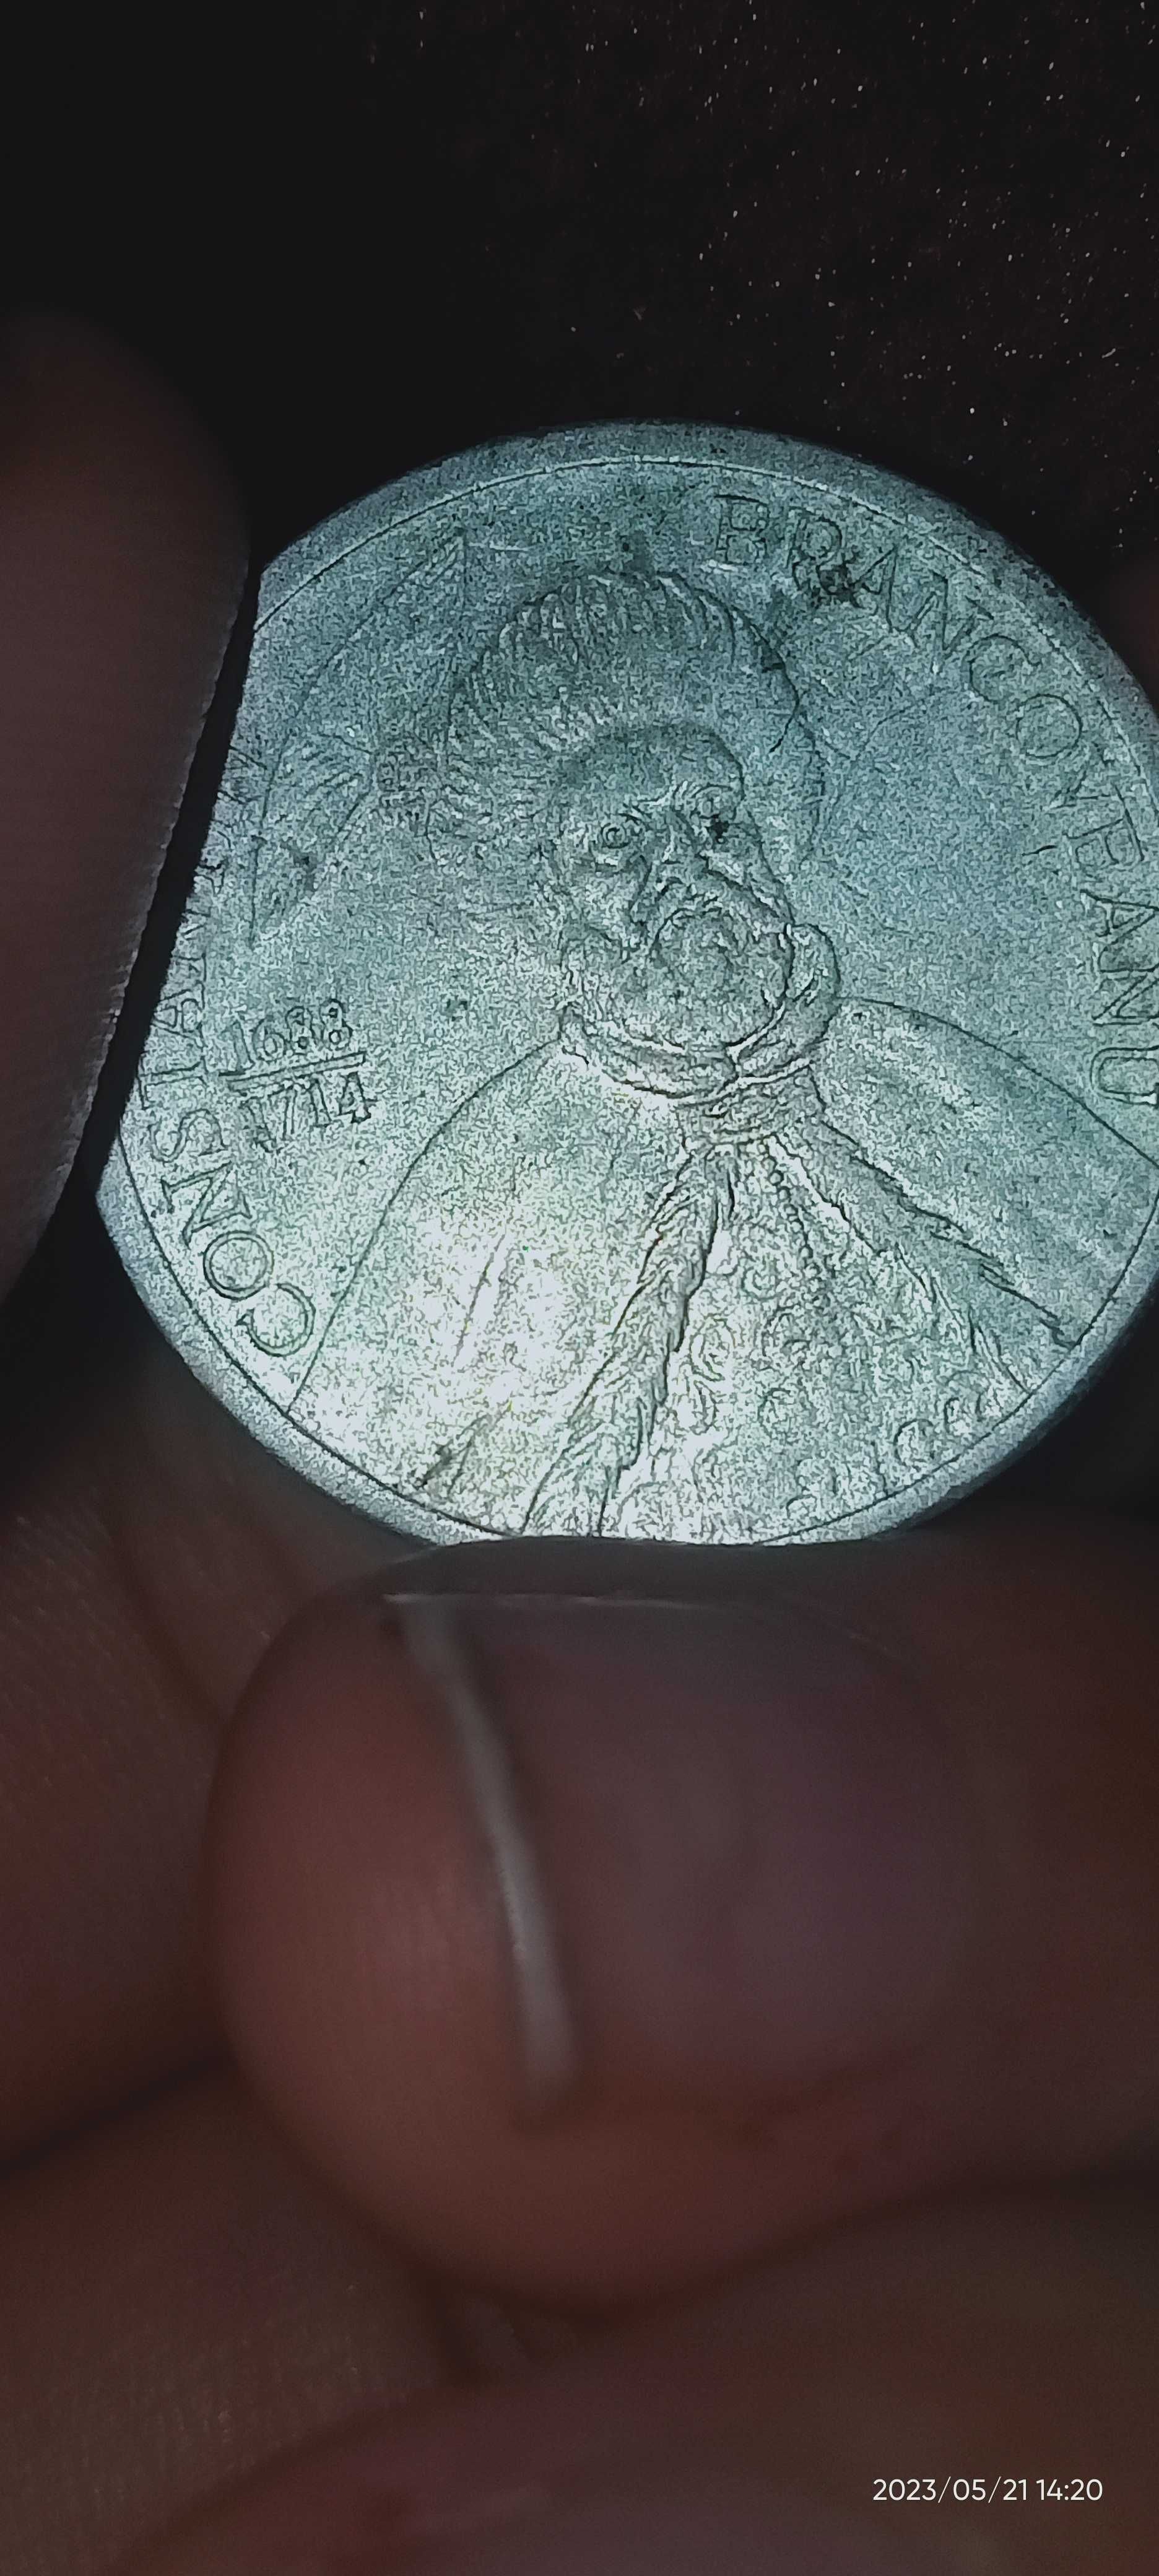 Monedă de 1000 lei foarte veche din 1688/1714